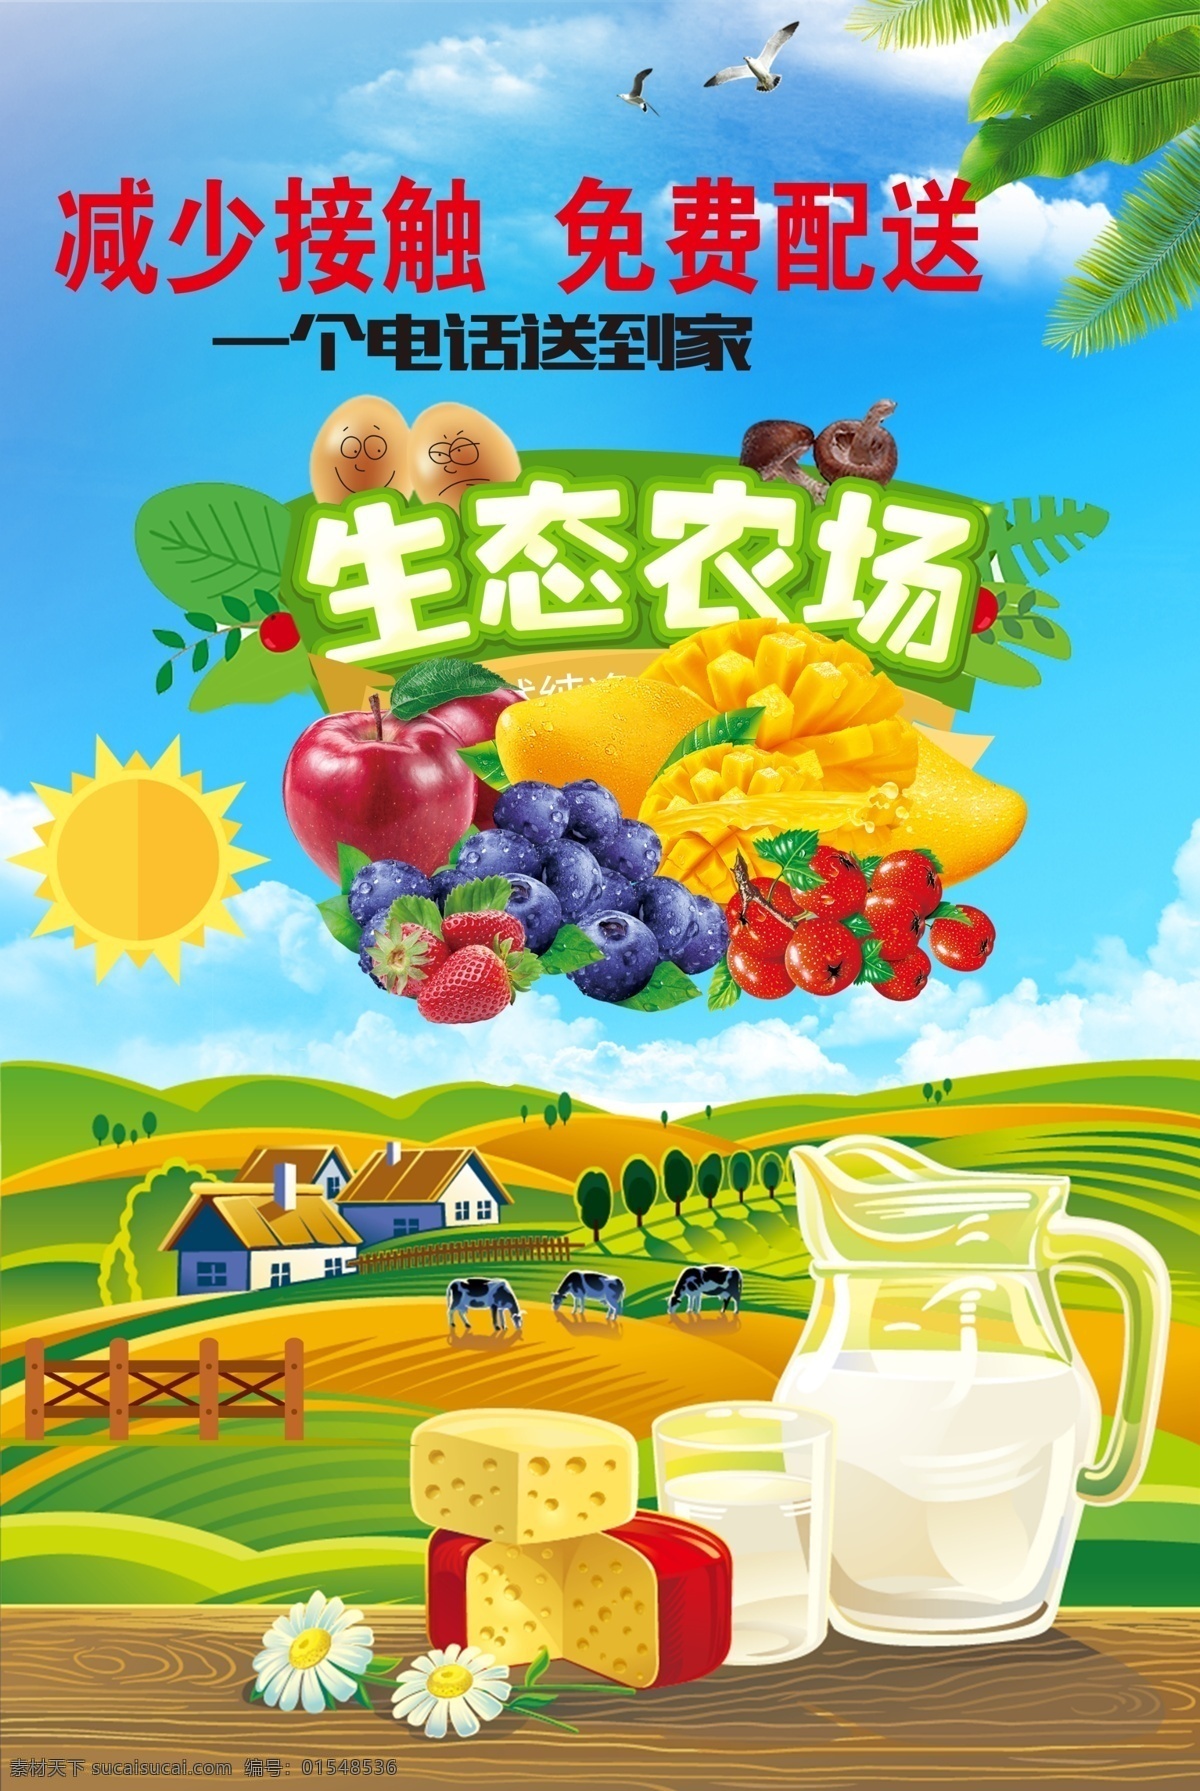 绿色农业 生态农业 水果 牛奶 副食品 农产品